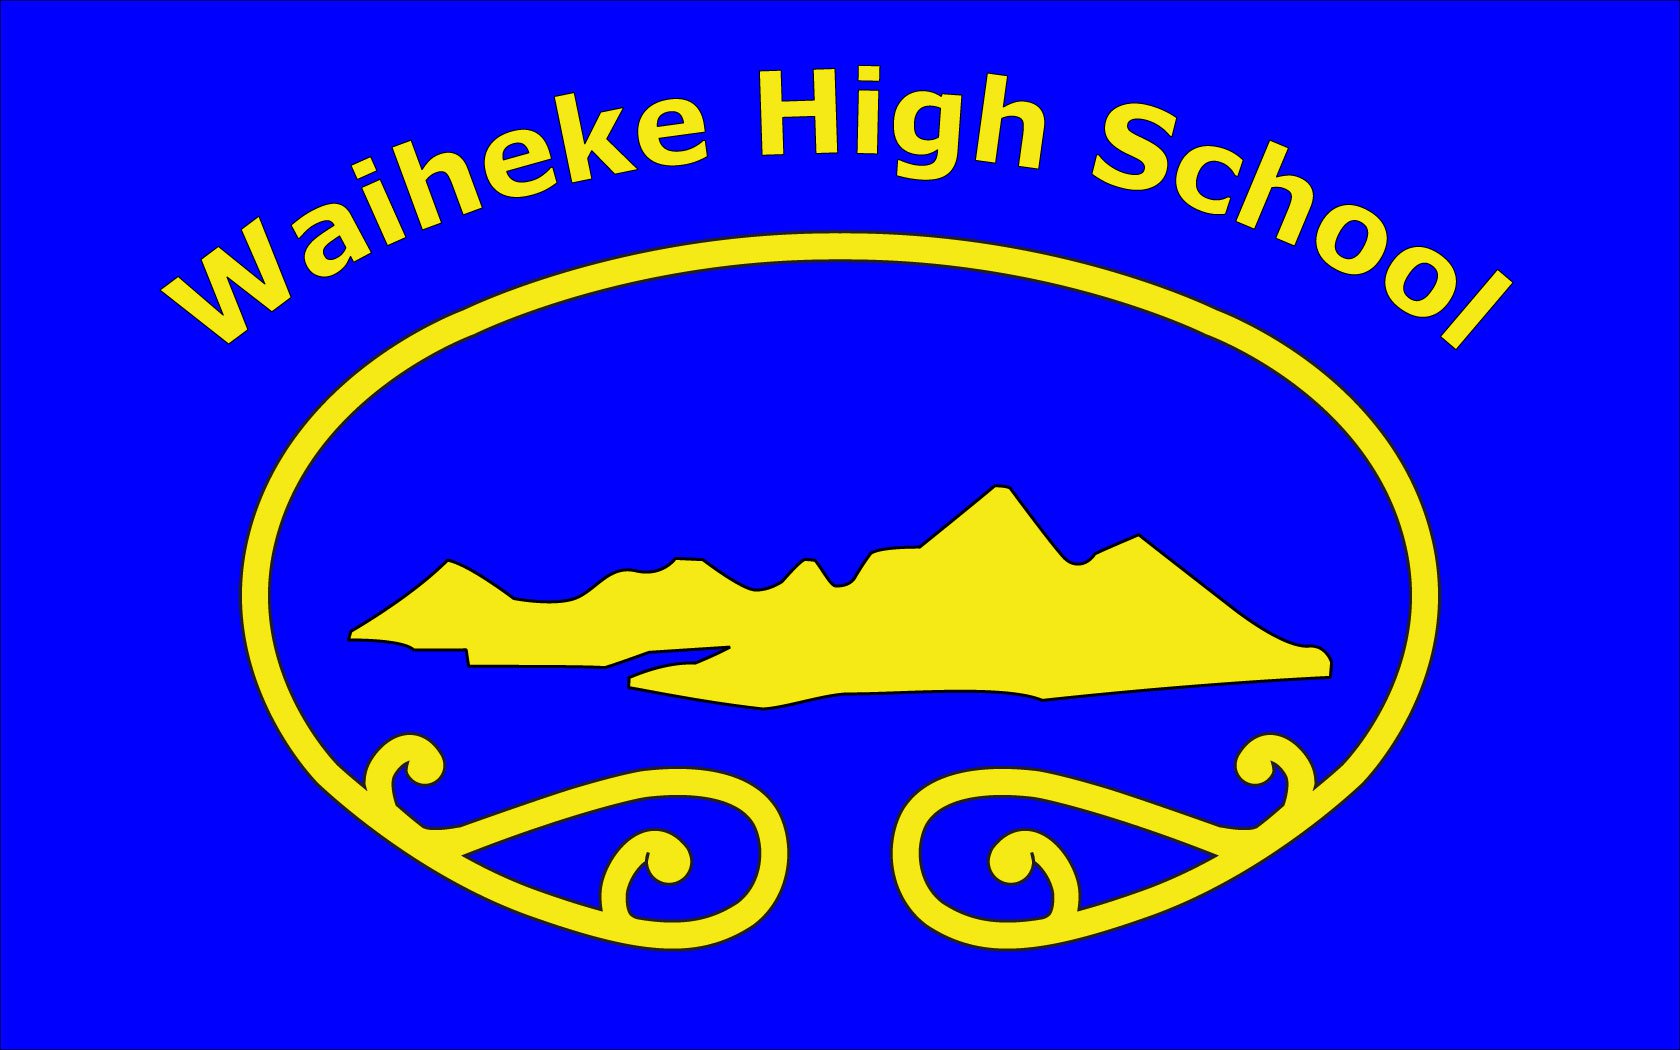 Waiheke High School校徽